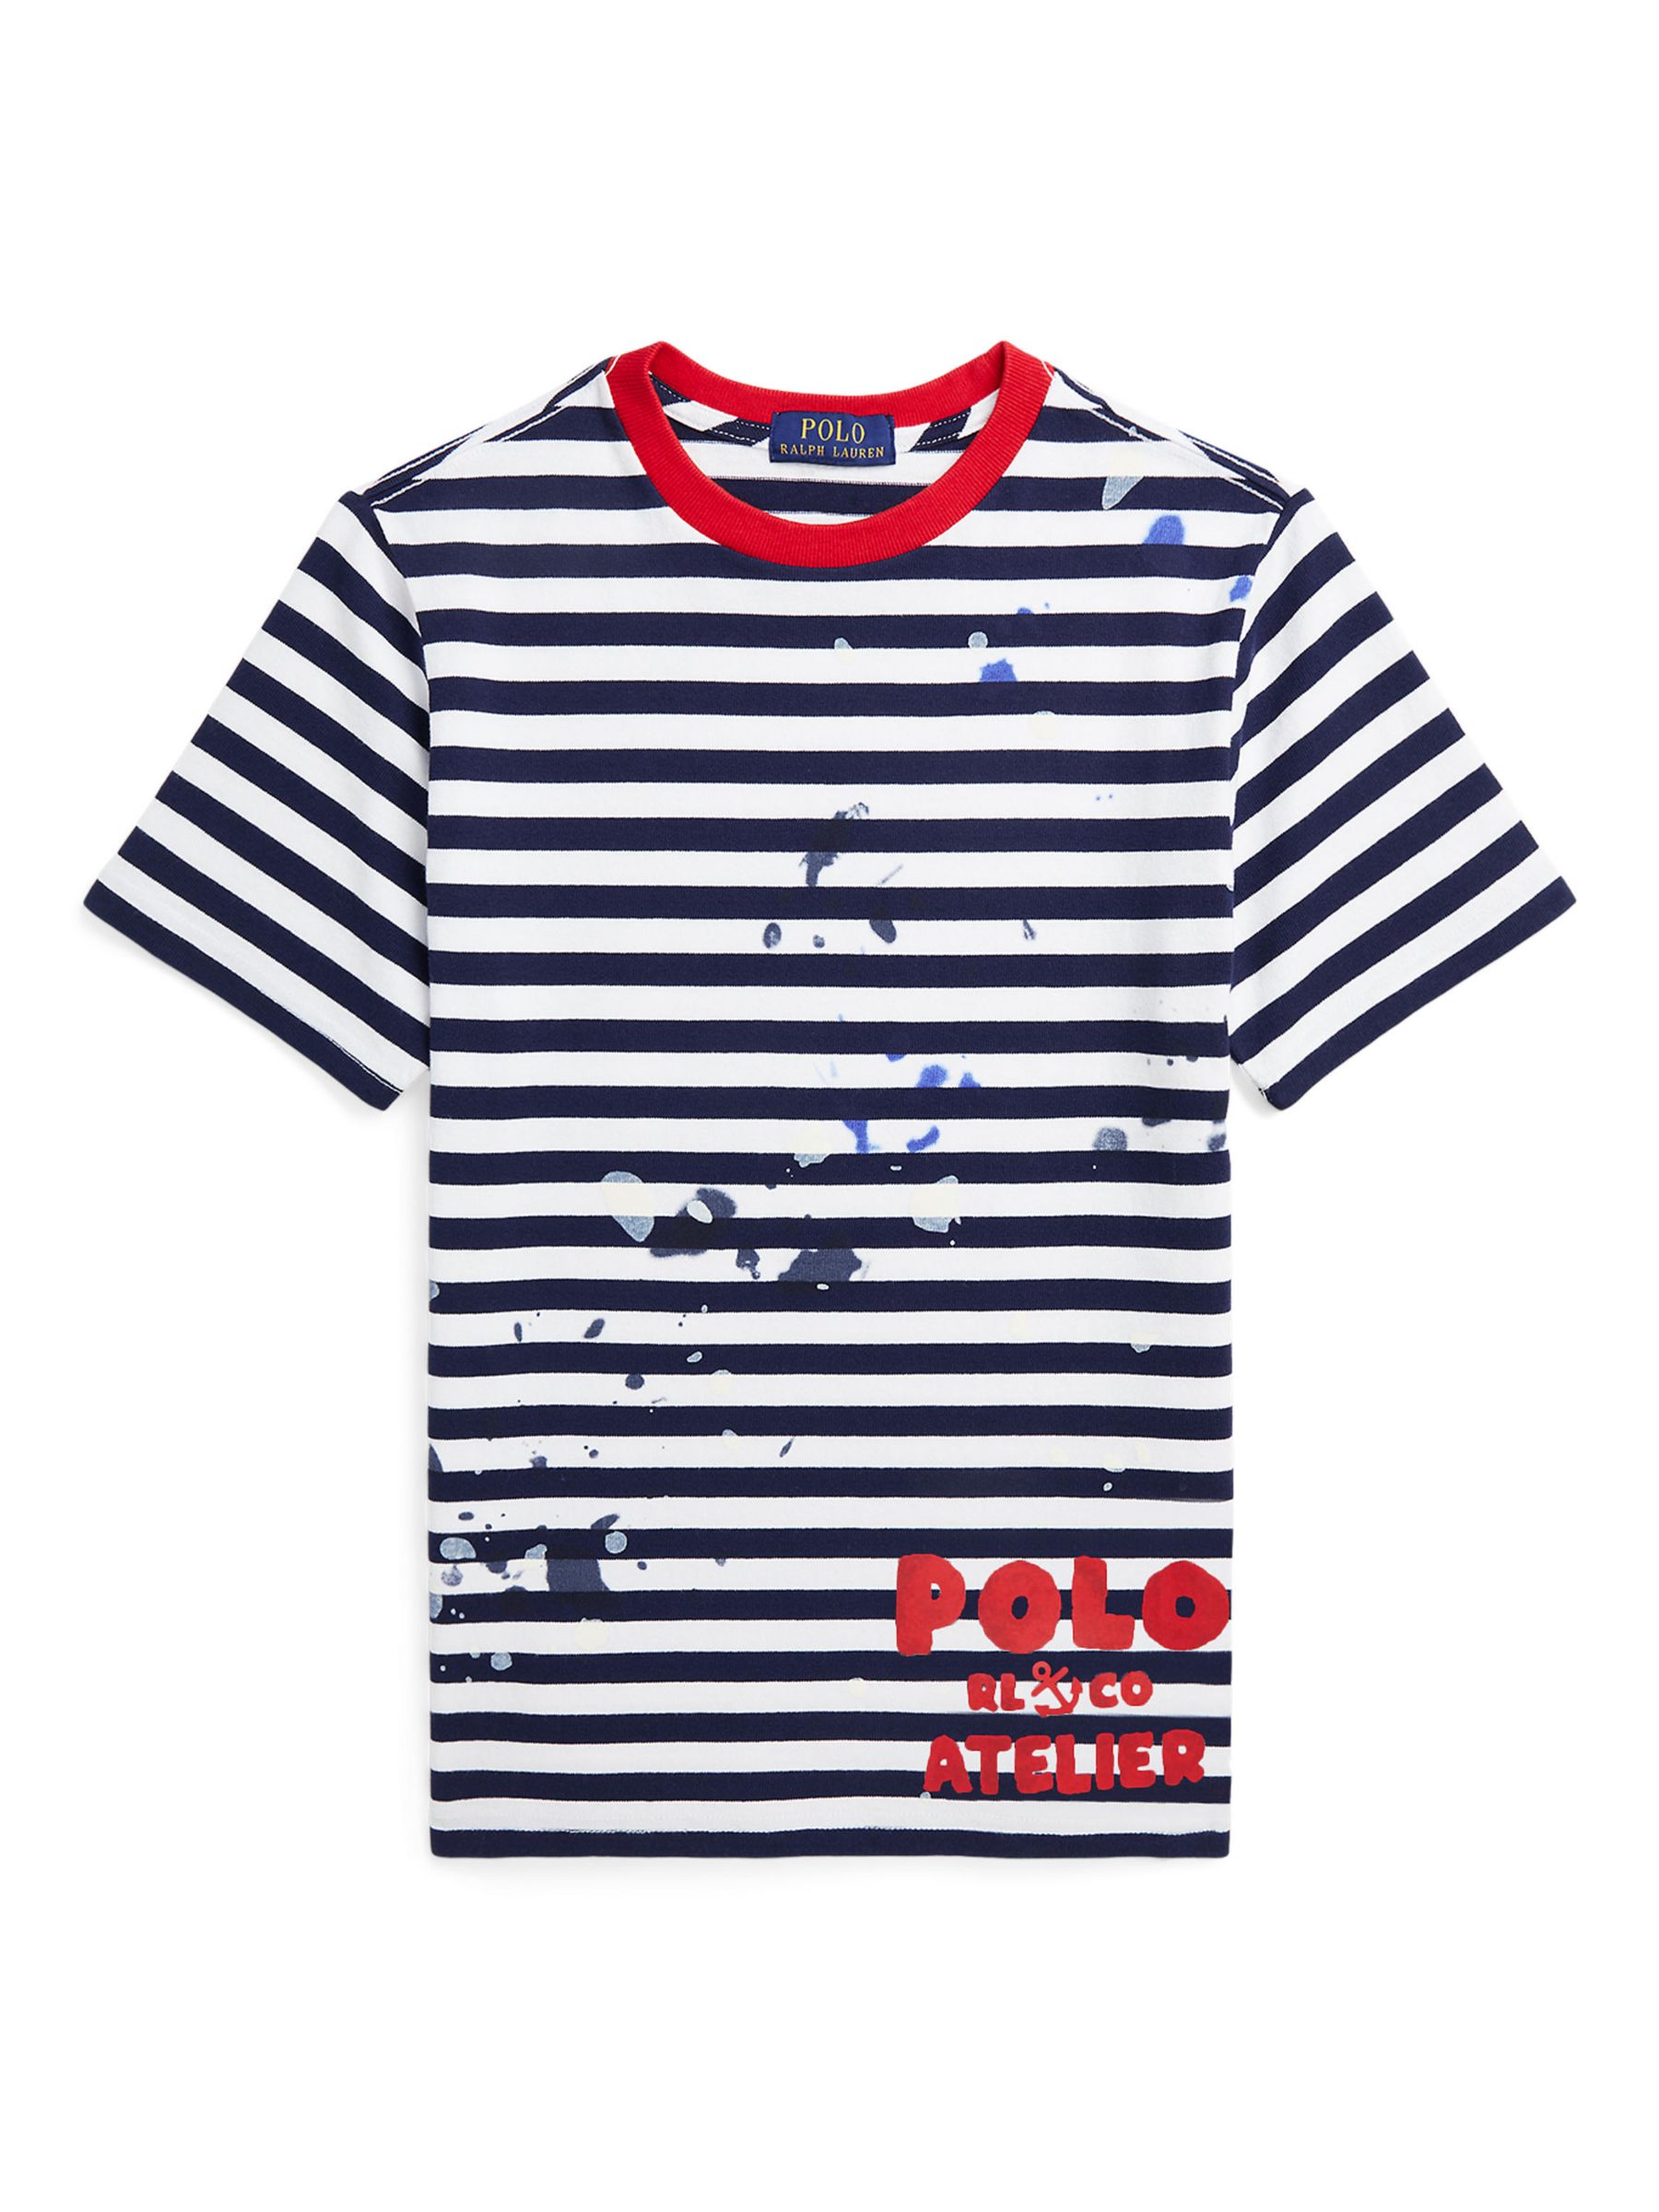 Ralph Lauren Kids' Artistic Stripe Short Sleeve T-Shirt, Newport Navy, 4 years